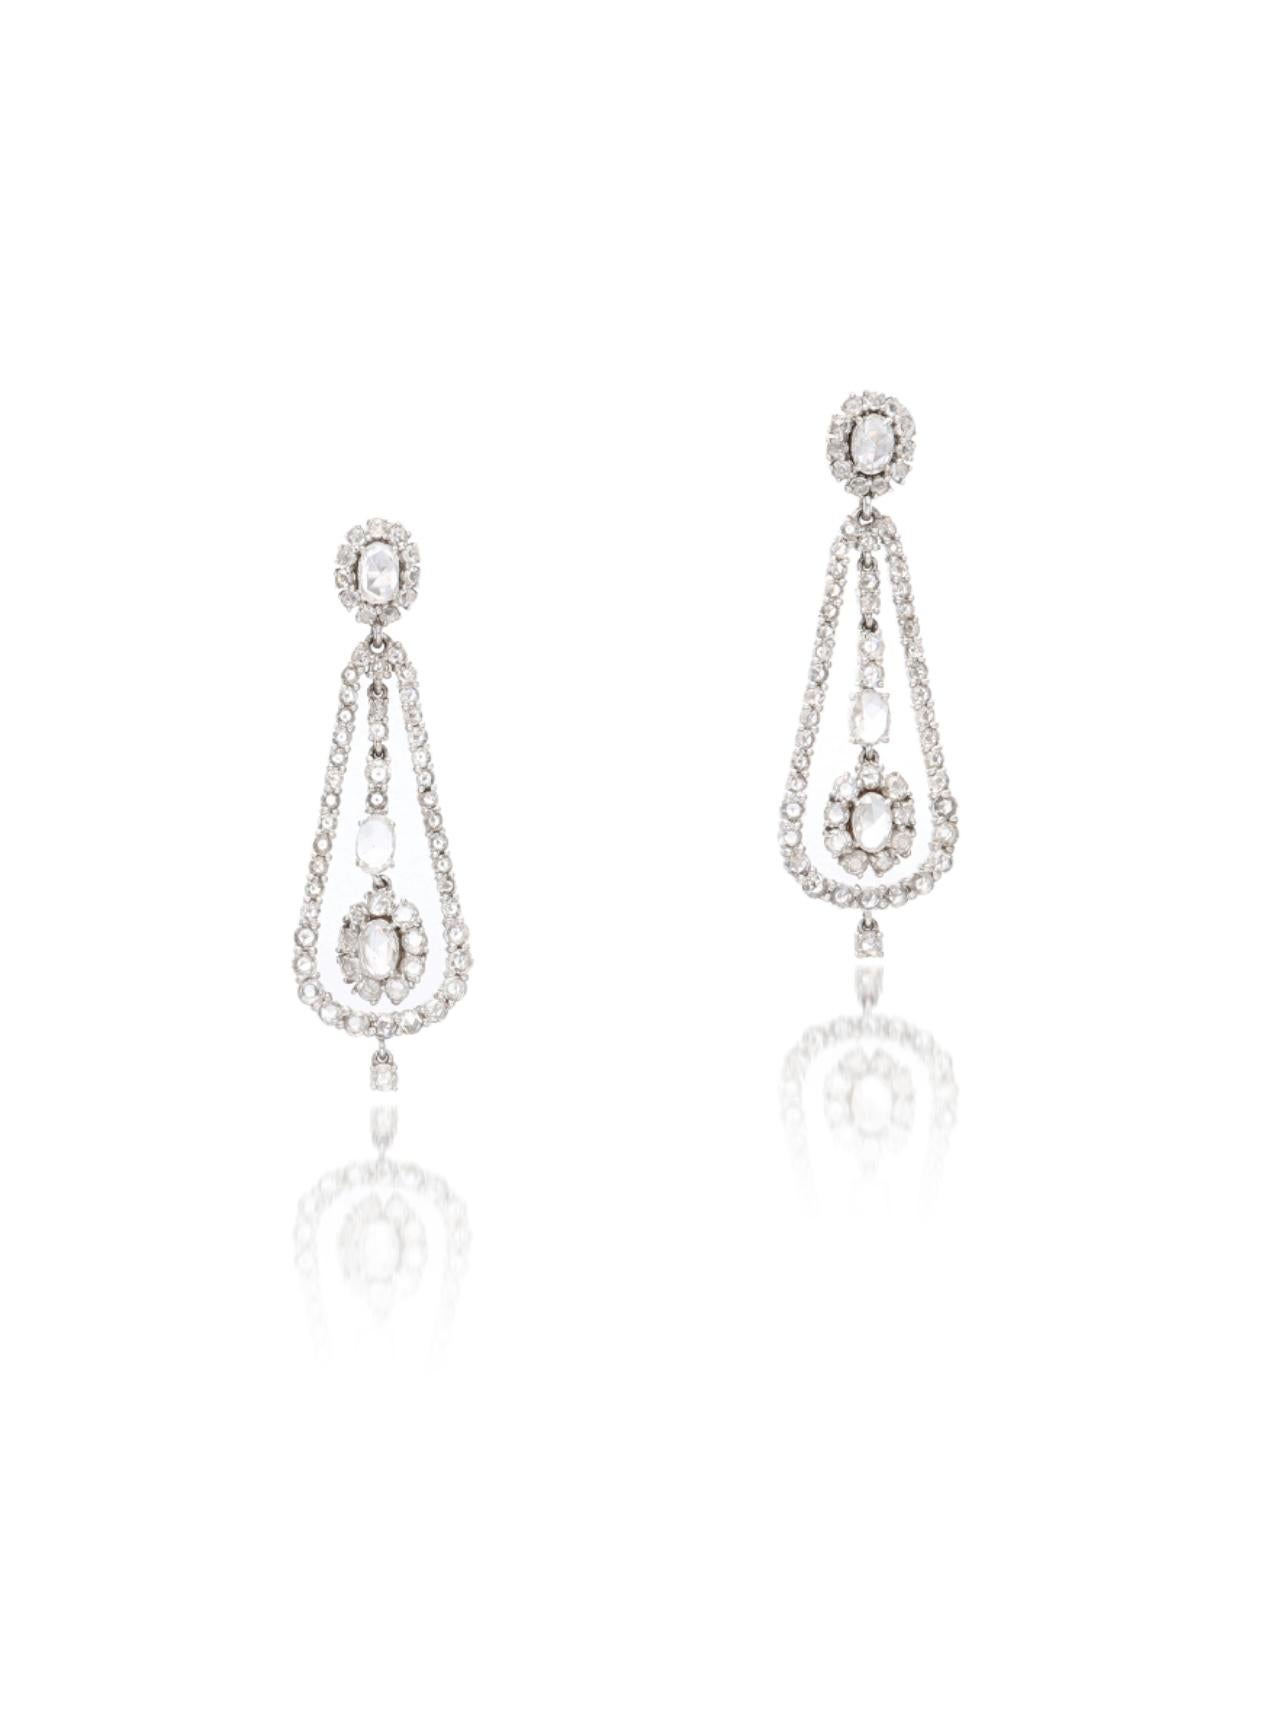 Rose Cut Diamond Chandelier Earrings In 18K White Gold.  For Sale 9